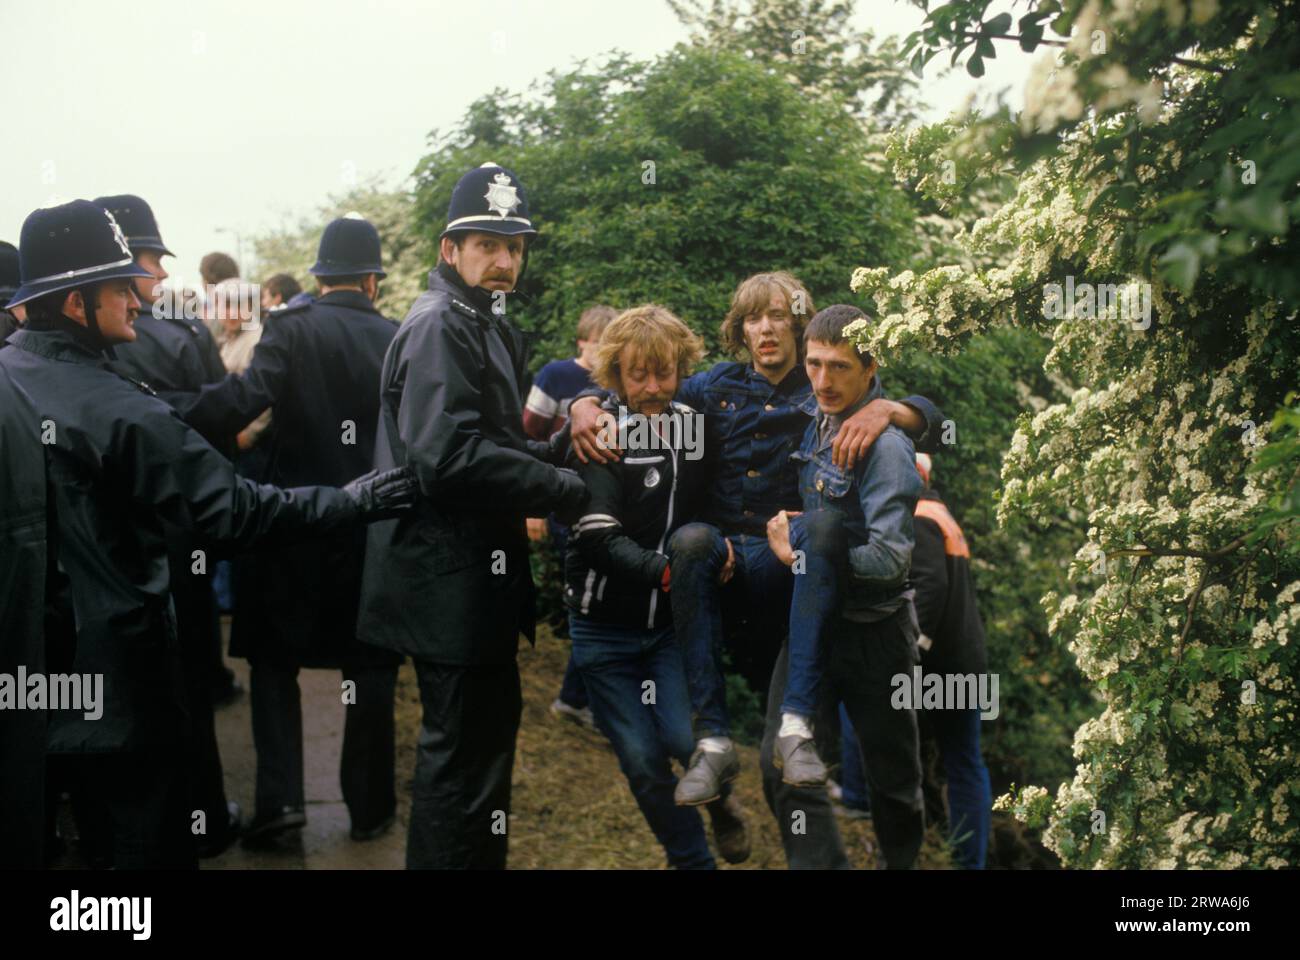 Bergleute streiken 1980er Jahre in Großbritannien. Die Schlacht von Orgreave war eine gewaltsame Konfrontation zwischen der Polizei und Pickets in einem Kokerei der British Steel Corporation in Orgreave. Fliegende Pickets, die von Kollegen verletzt wurden. Orgreave, Yorkshire, 1984 UK HOMER SYKES Stockfoto